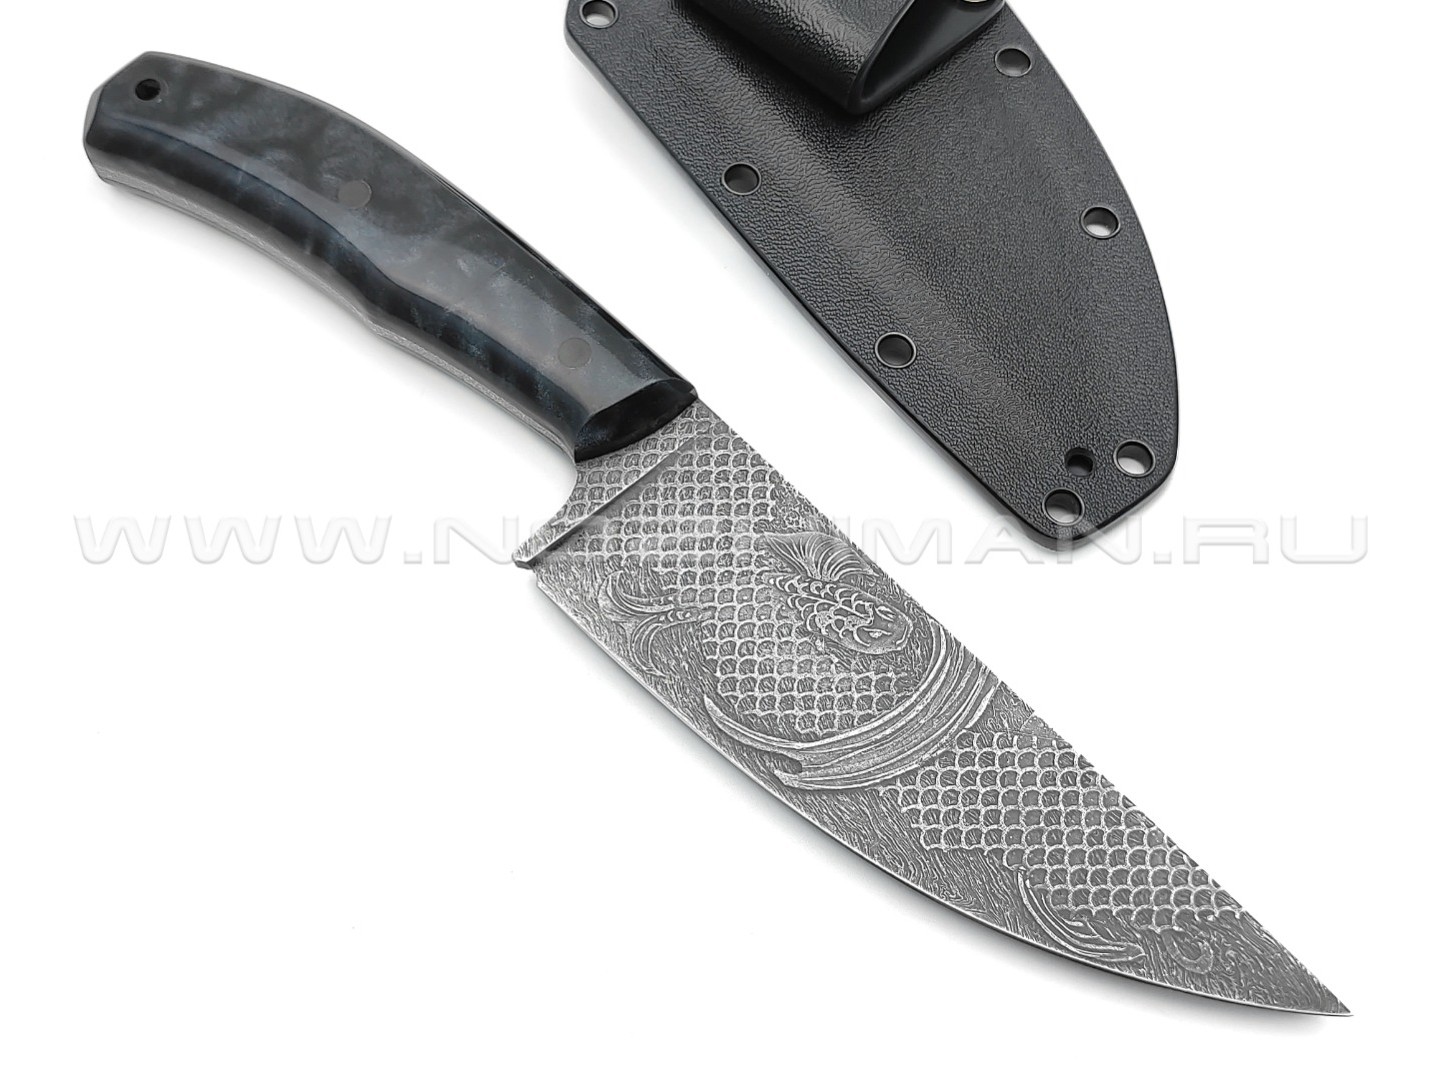 Волчий Век нож Mark-I Custom сталь Niolox WA, рукоять Трёхмерный композит